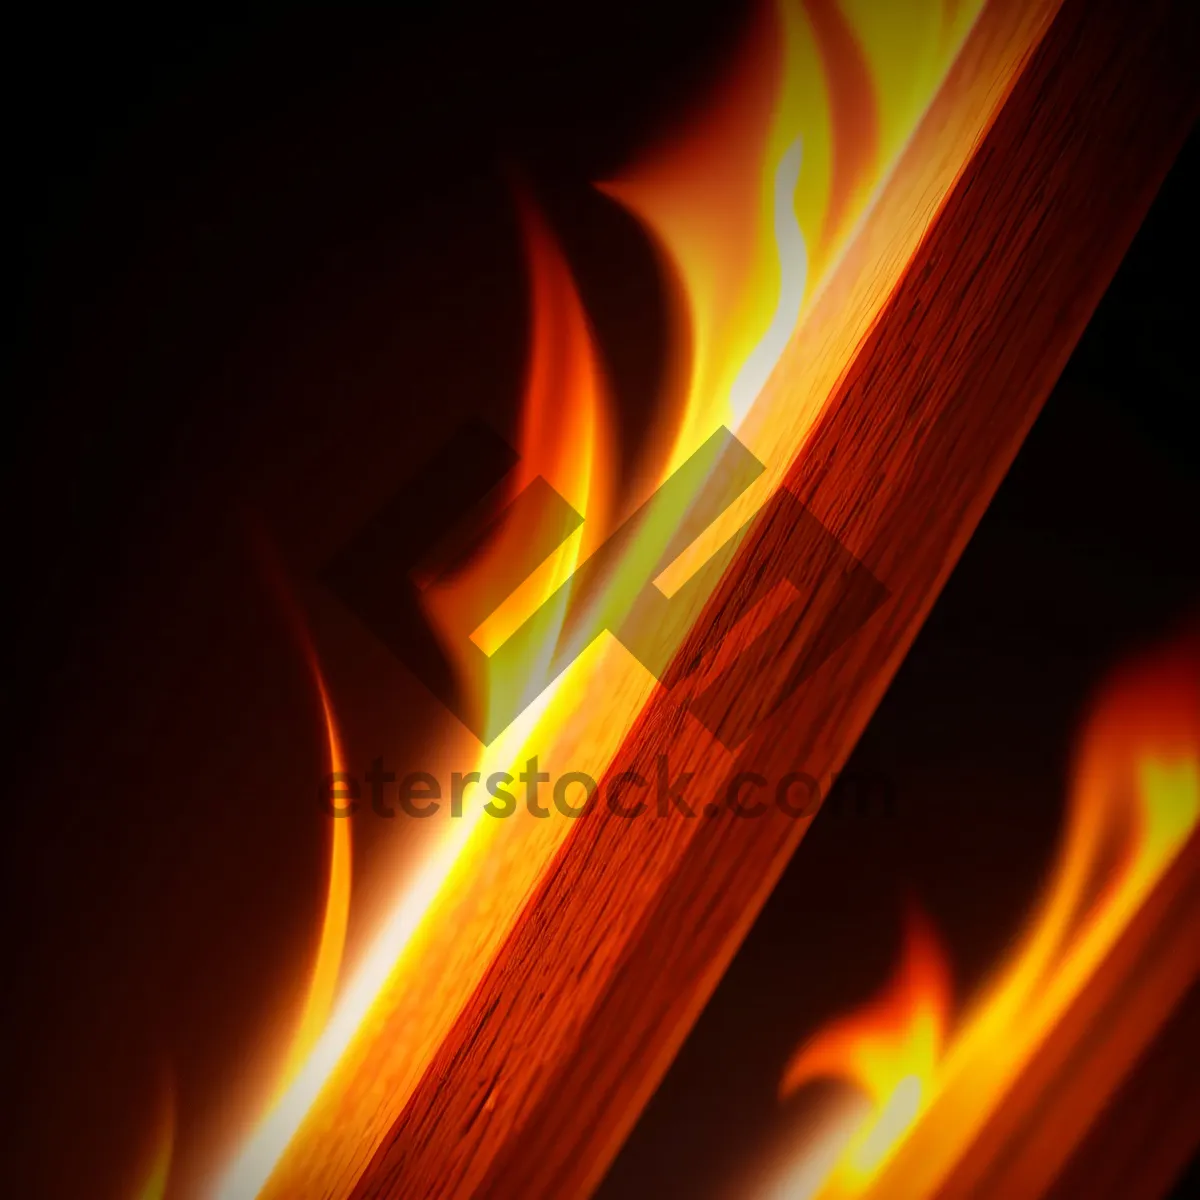 Picture of Blazing Matchstick: Fiery Fractal Art Wallpaper